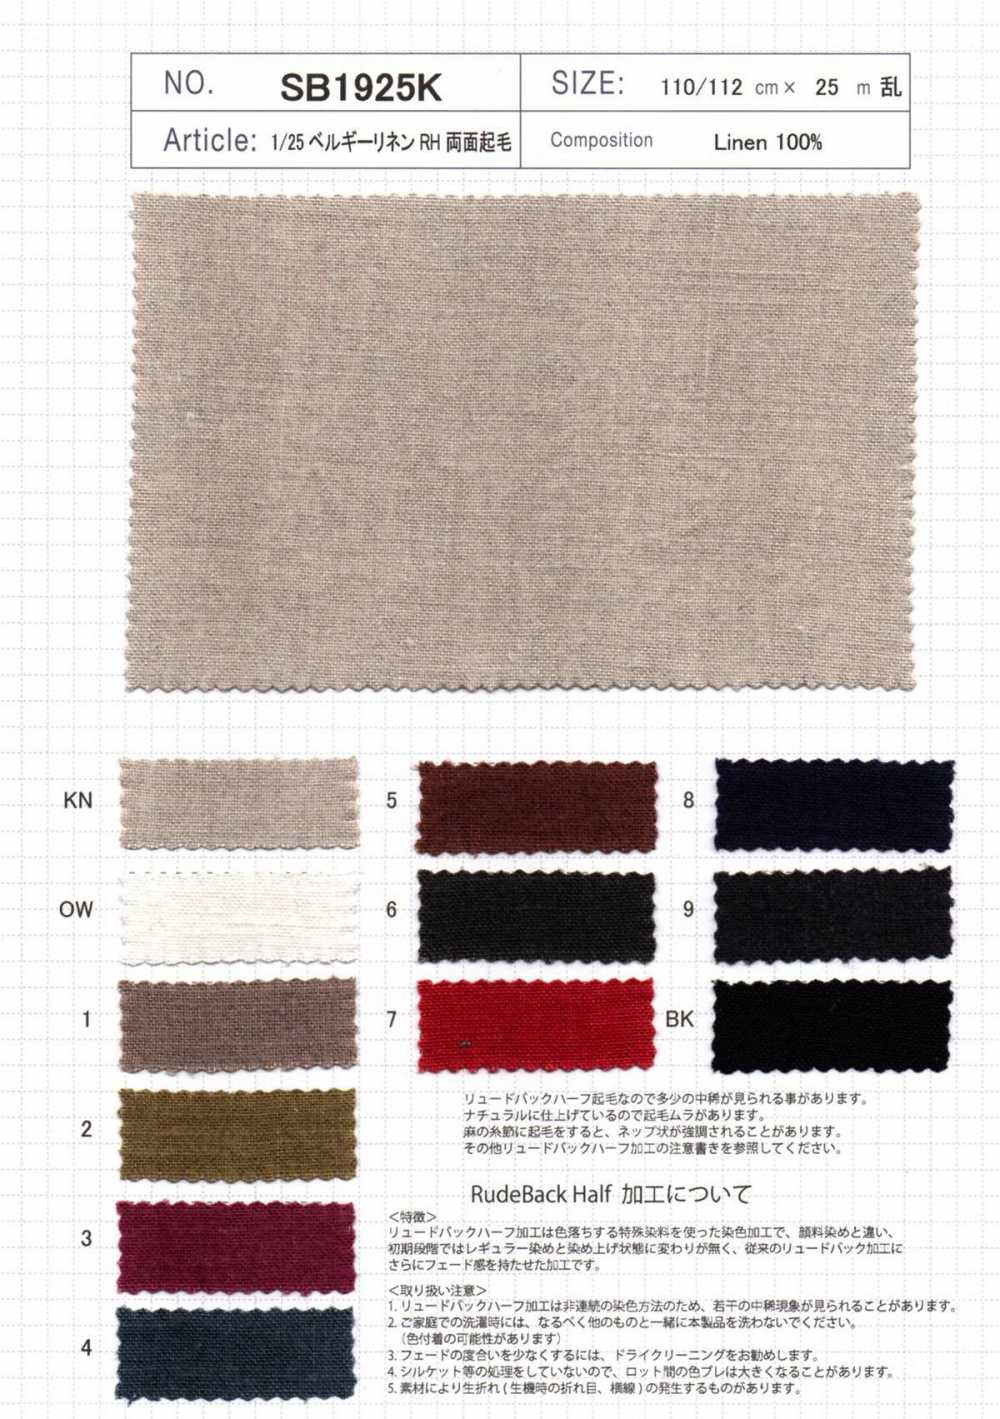 SB1925K Nome Do Produto 1/25 Linho Belga RH Fuzzy Em Ambos Os Lados[Têxtil / Tecido] SHIBAYA